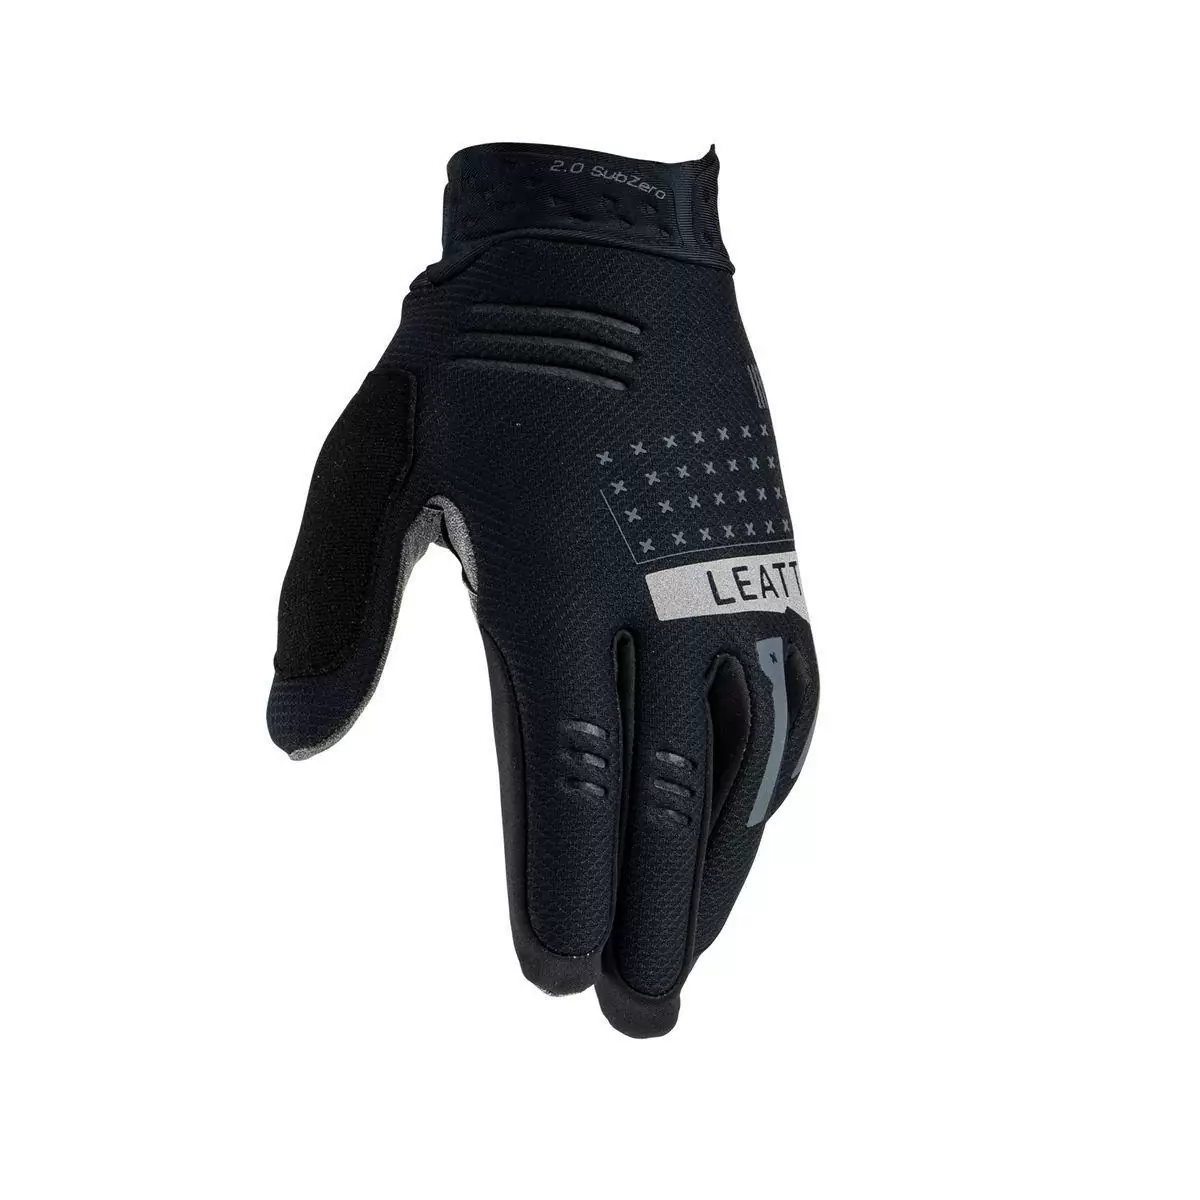 Winter Glove Mtb 2.0 subzero Black size S #4